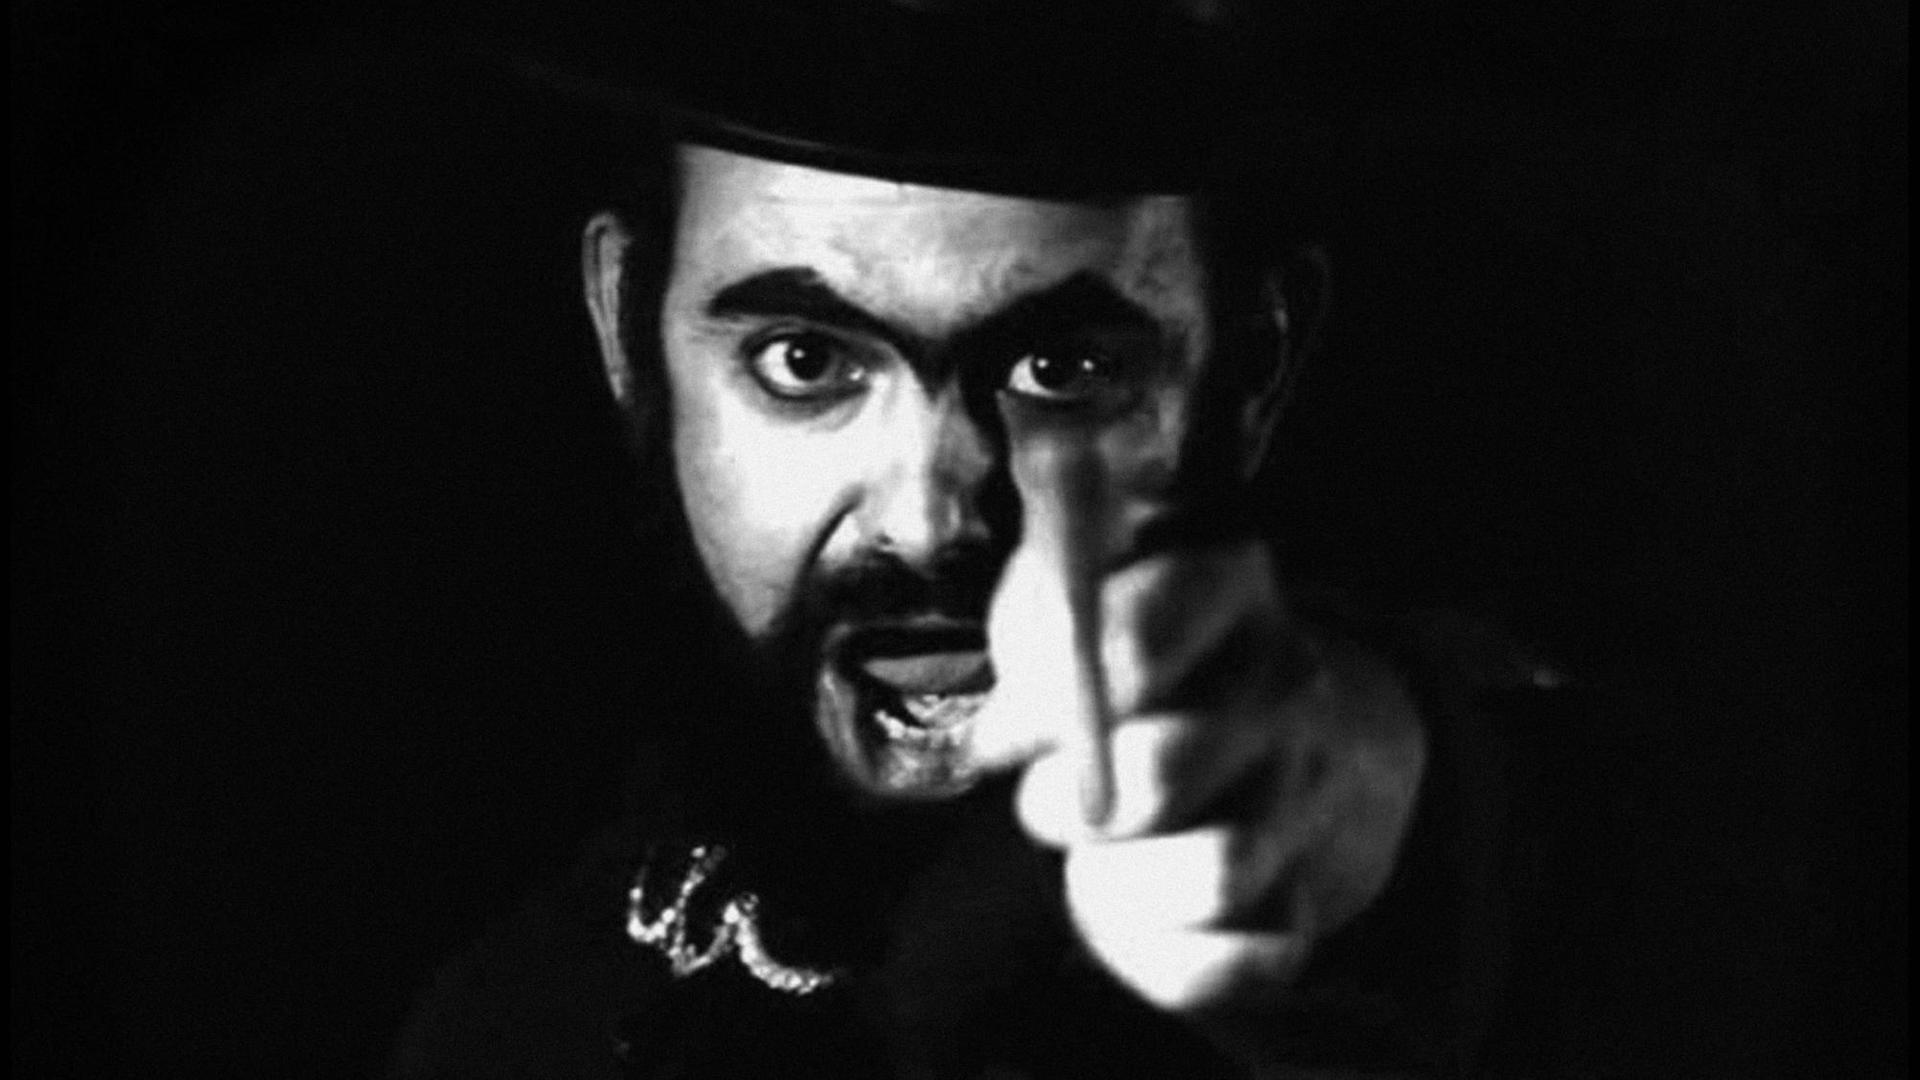 José Mojica Marins als "Coffin Joe" in "Das Erwachen der Bestie" von 1970.